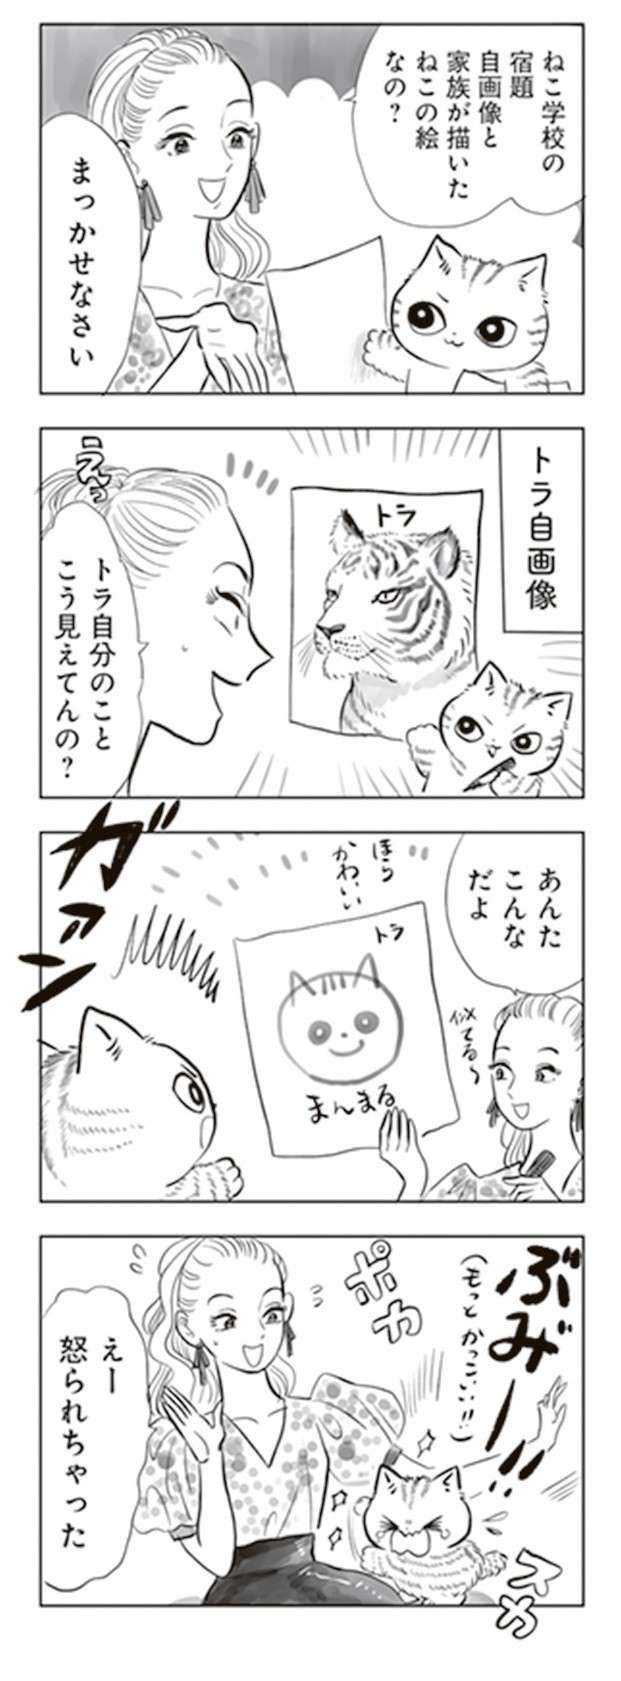 軒下で生まれ保護された子猫。里親が見つかったがなかなかやんちゃで...／トラと陽子 tora_yoko9-6.jpg